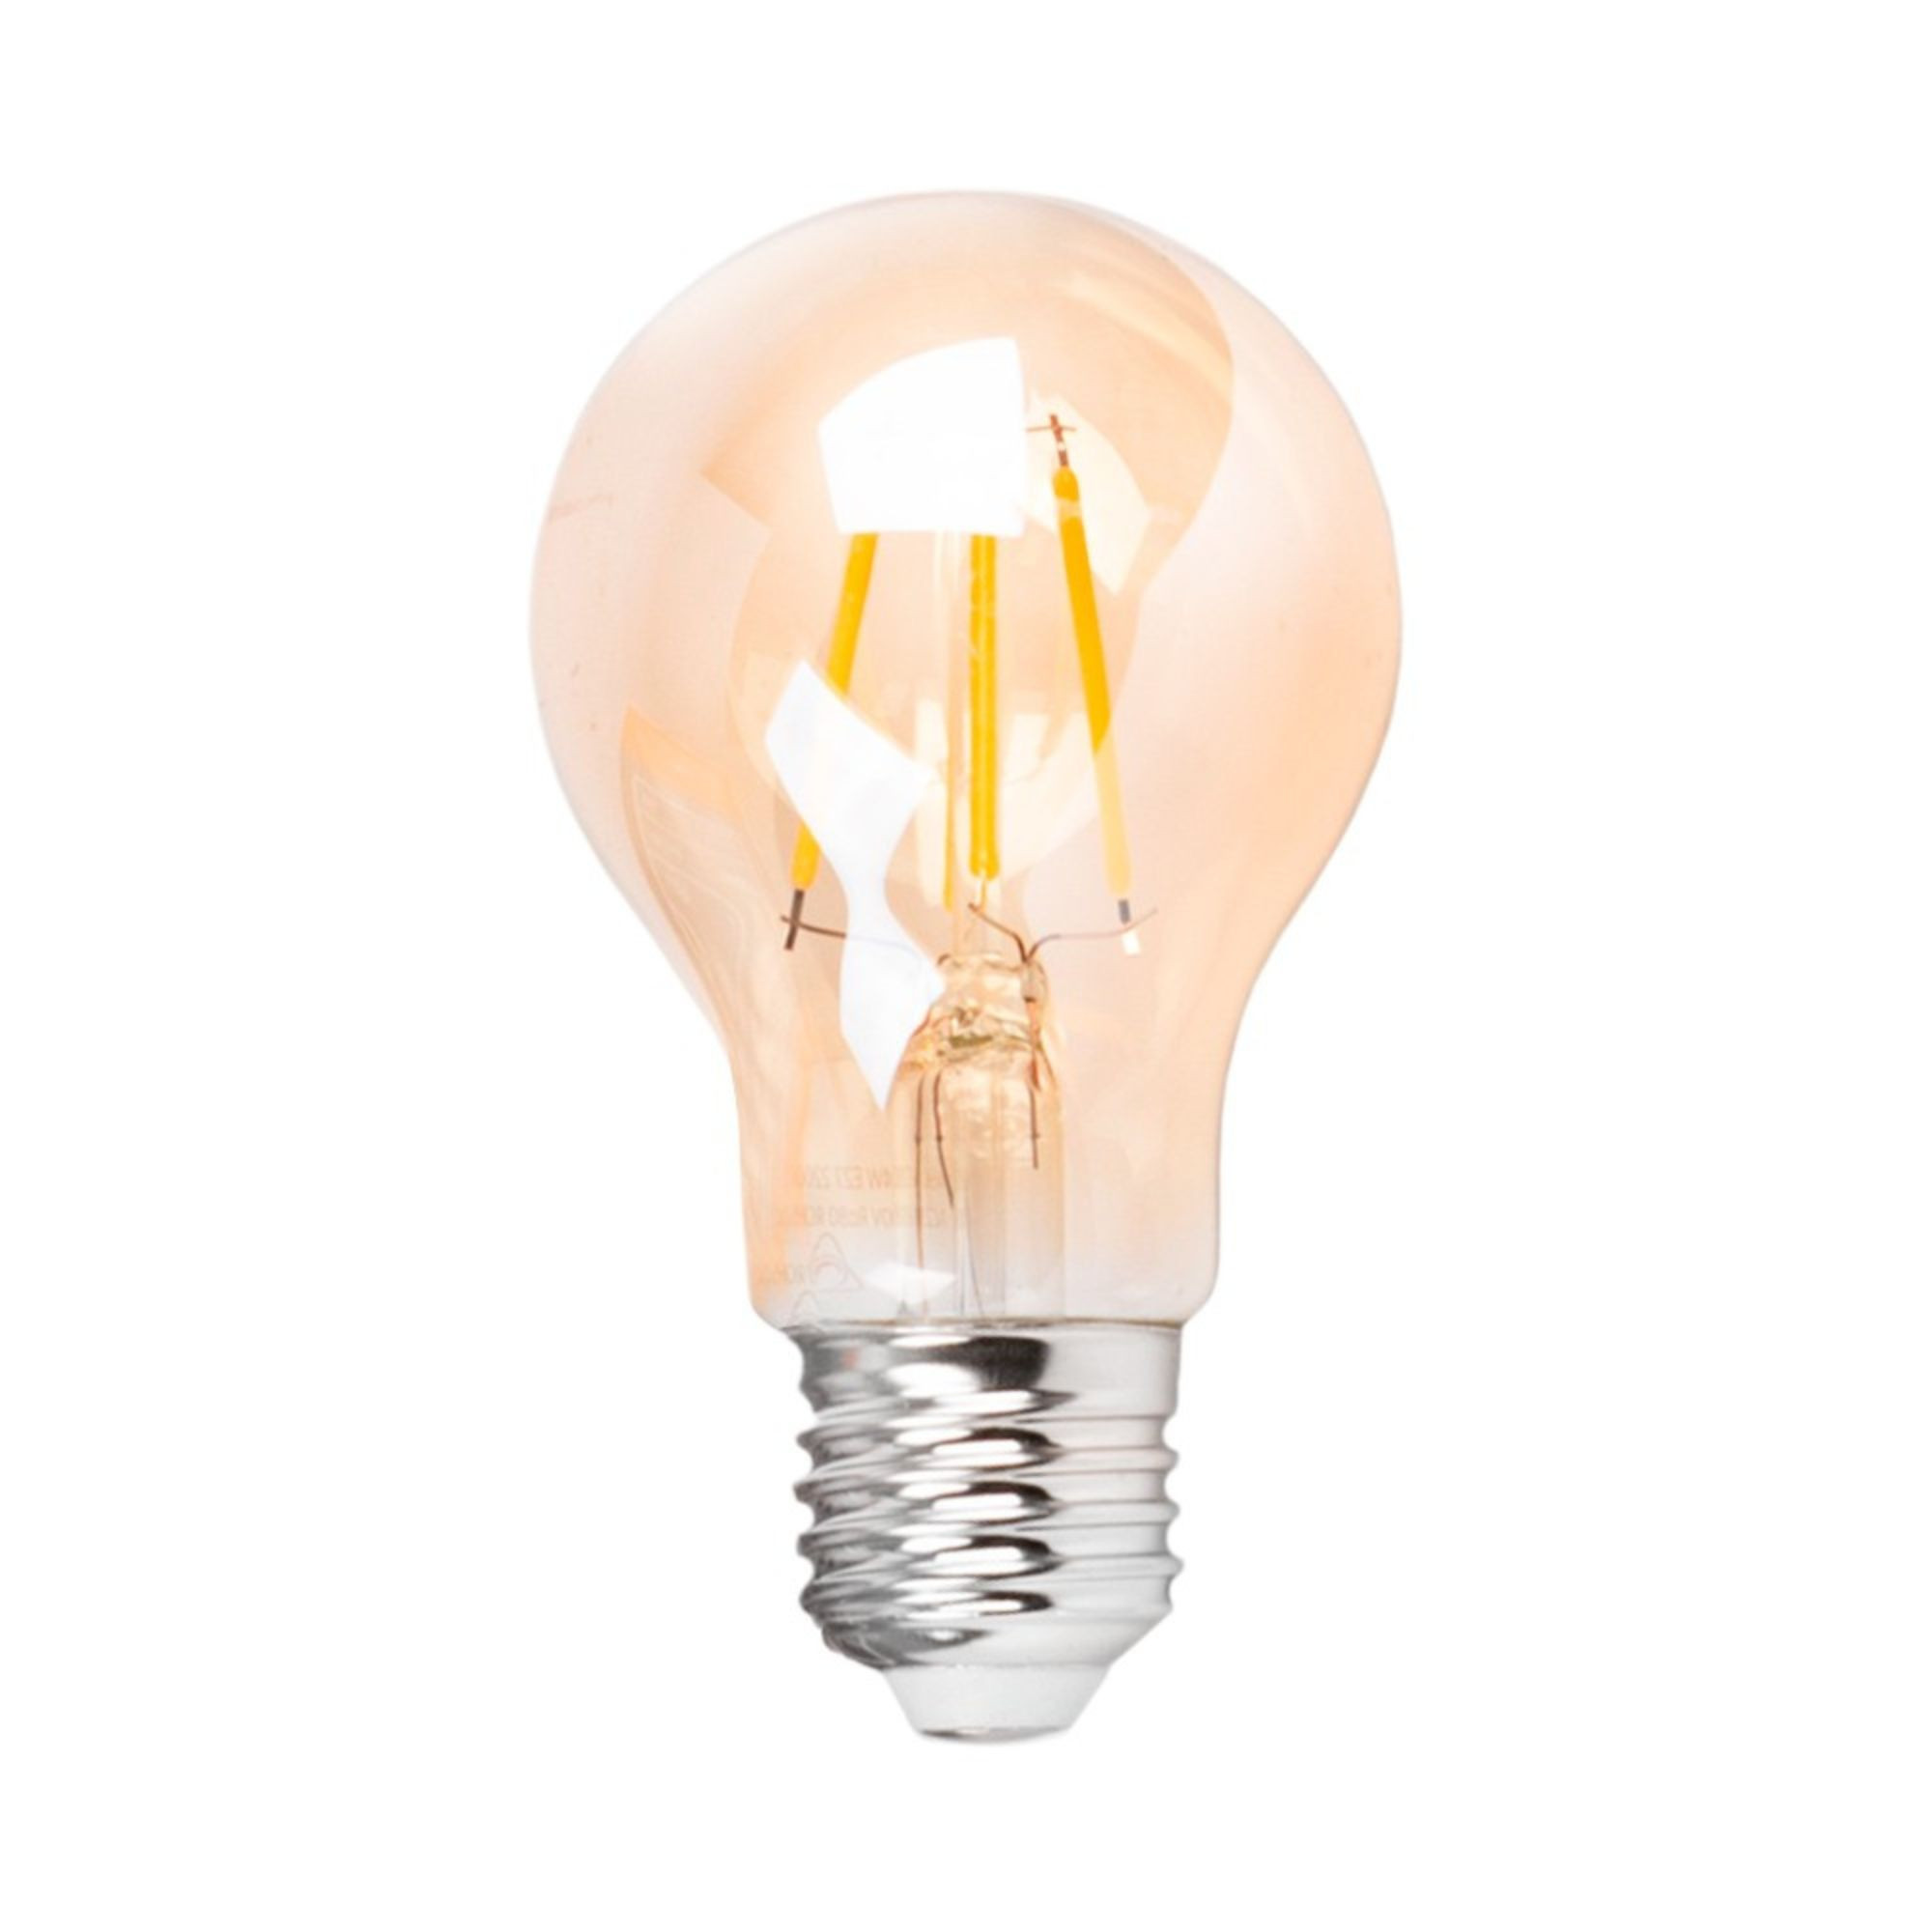 Lampadina decorativa vintage LED E27 luce colorata RGB ambra